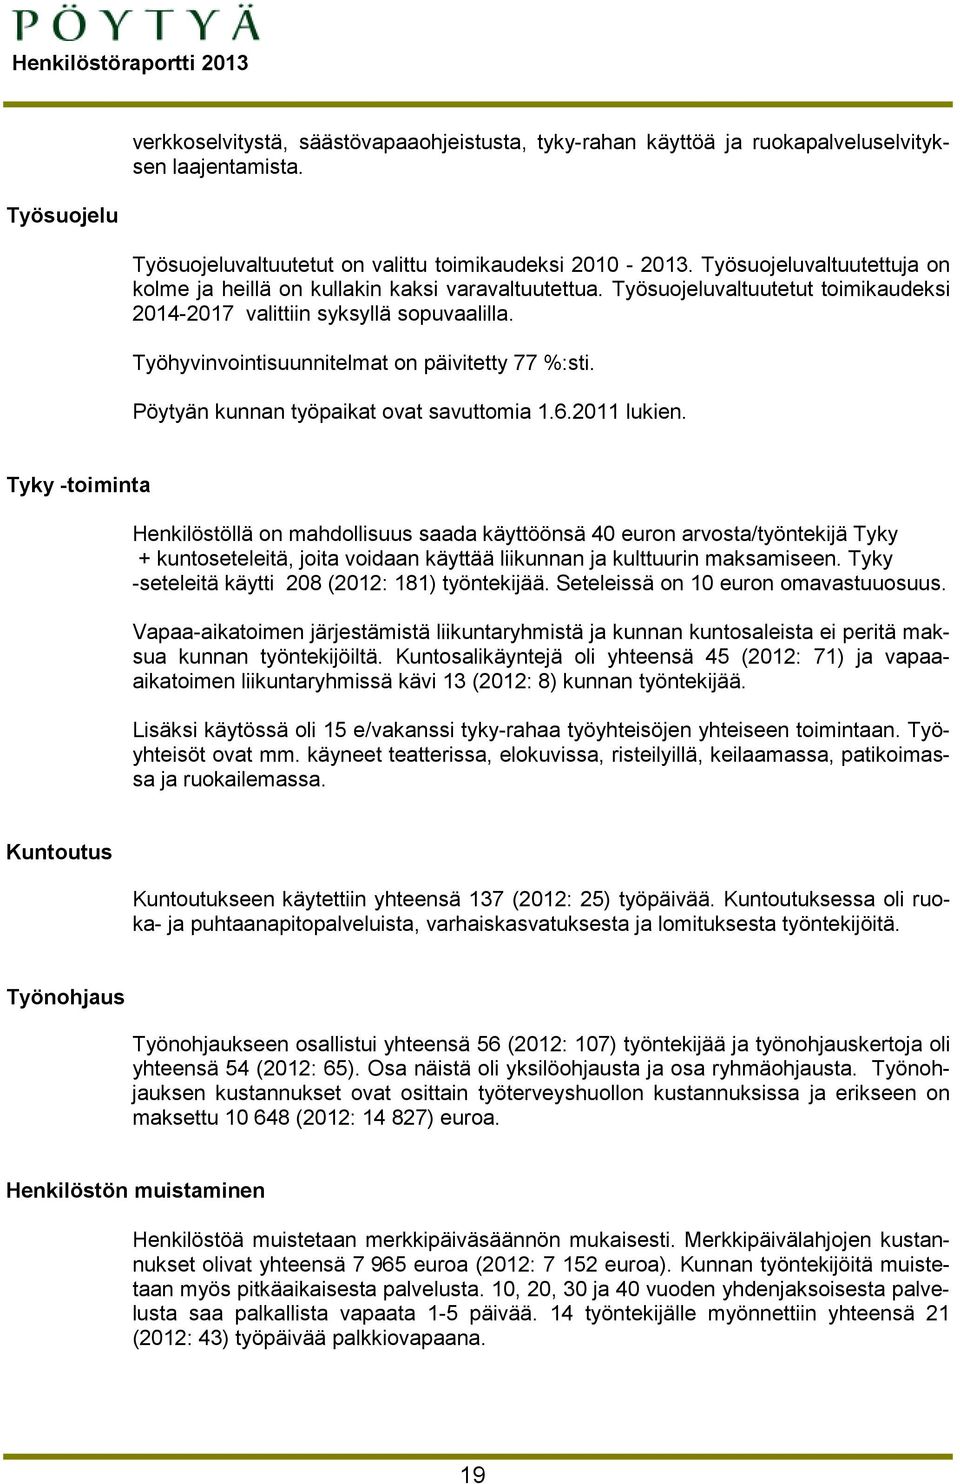 Työhyvinvointisuunnitelmat on päivitetty 77 %:sti. Pöytyän kunnan työpaikat ovat savuttomia 1.6.2011 lukien.